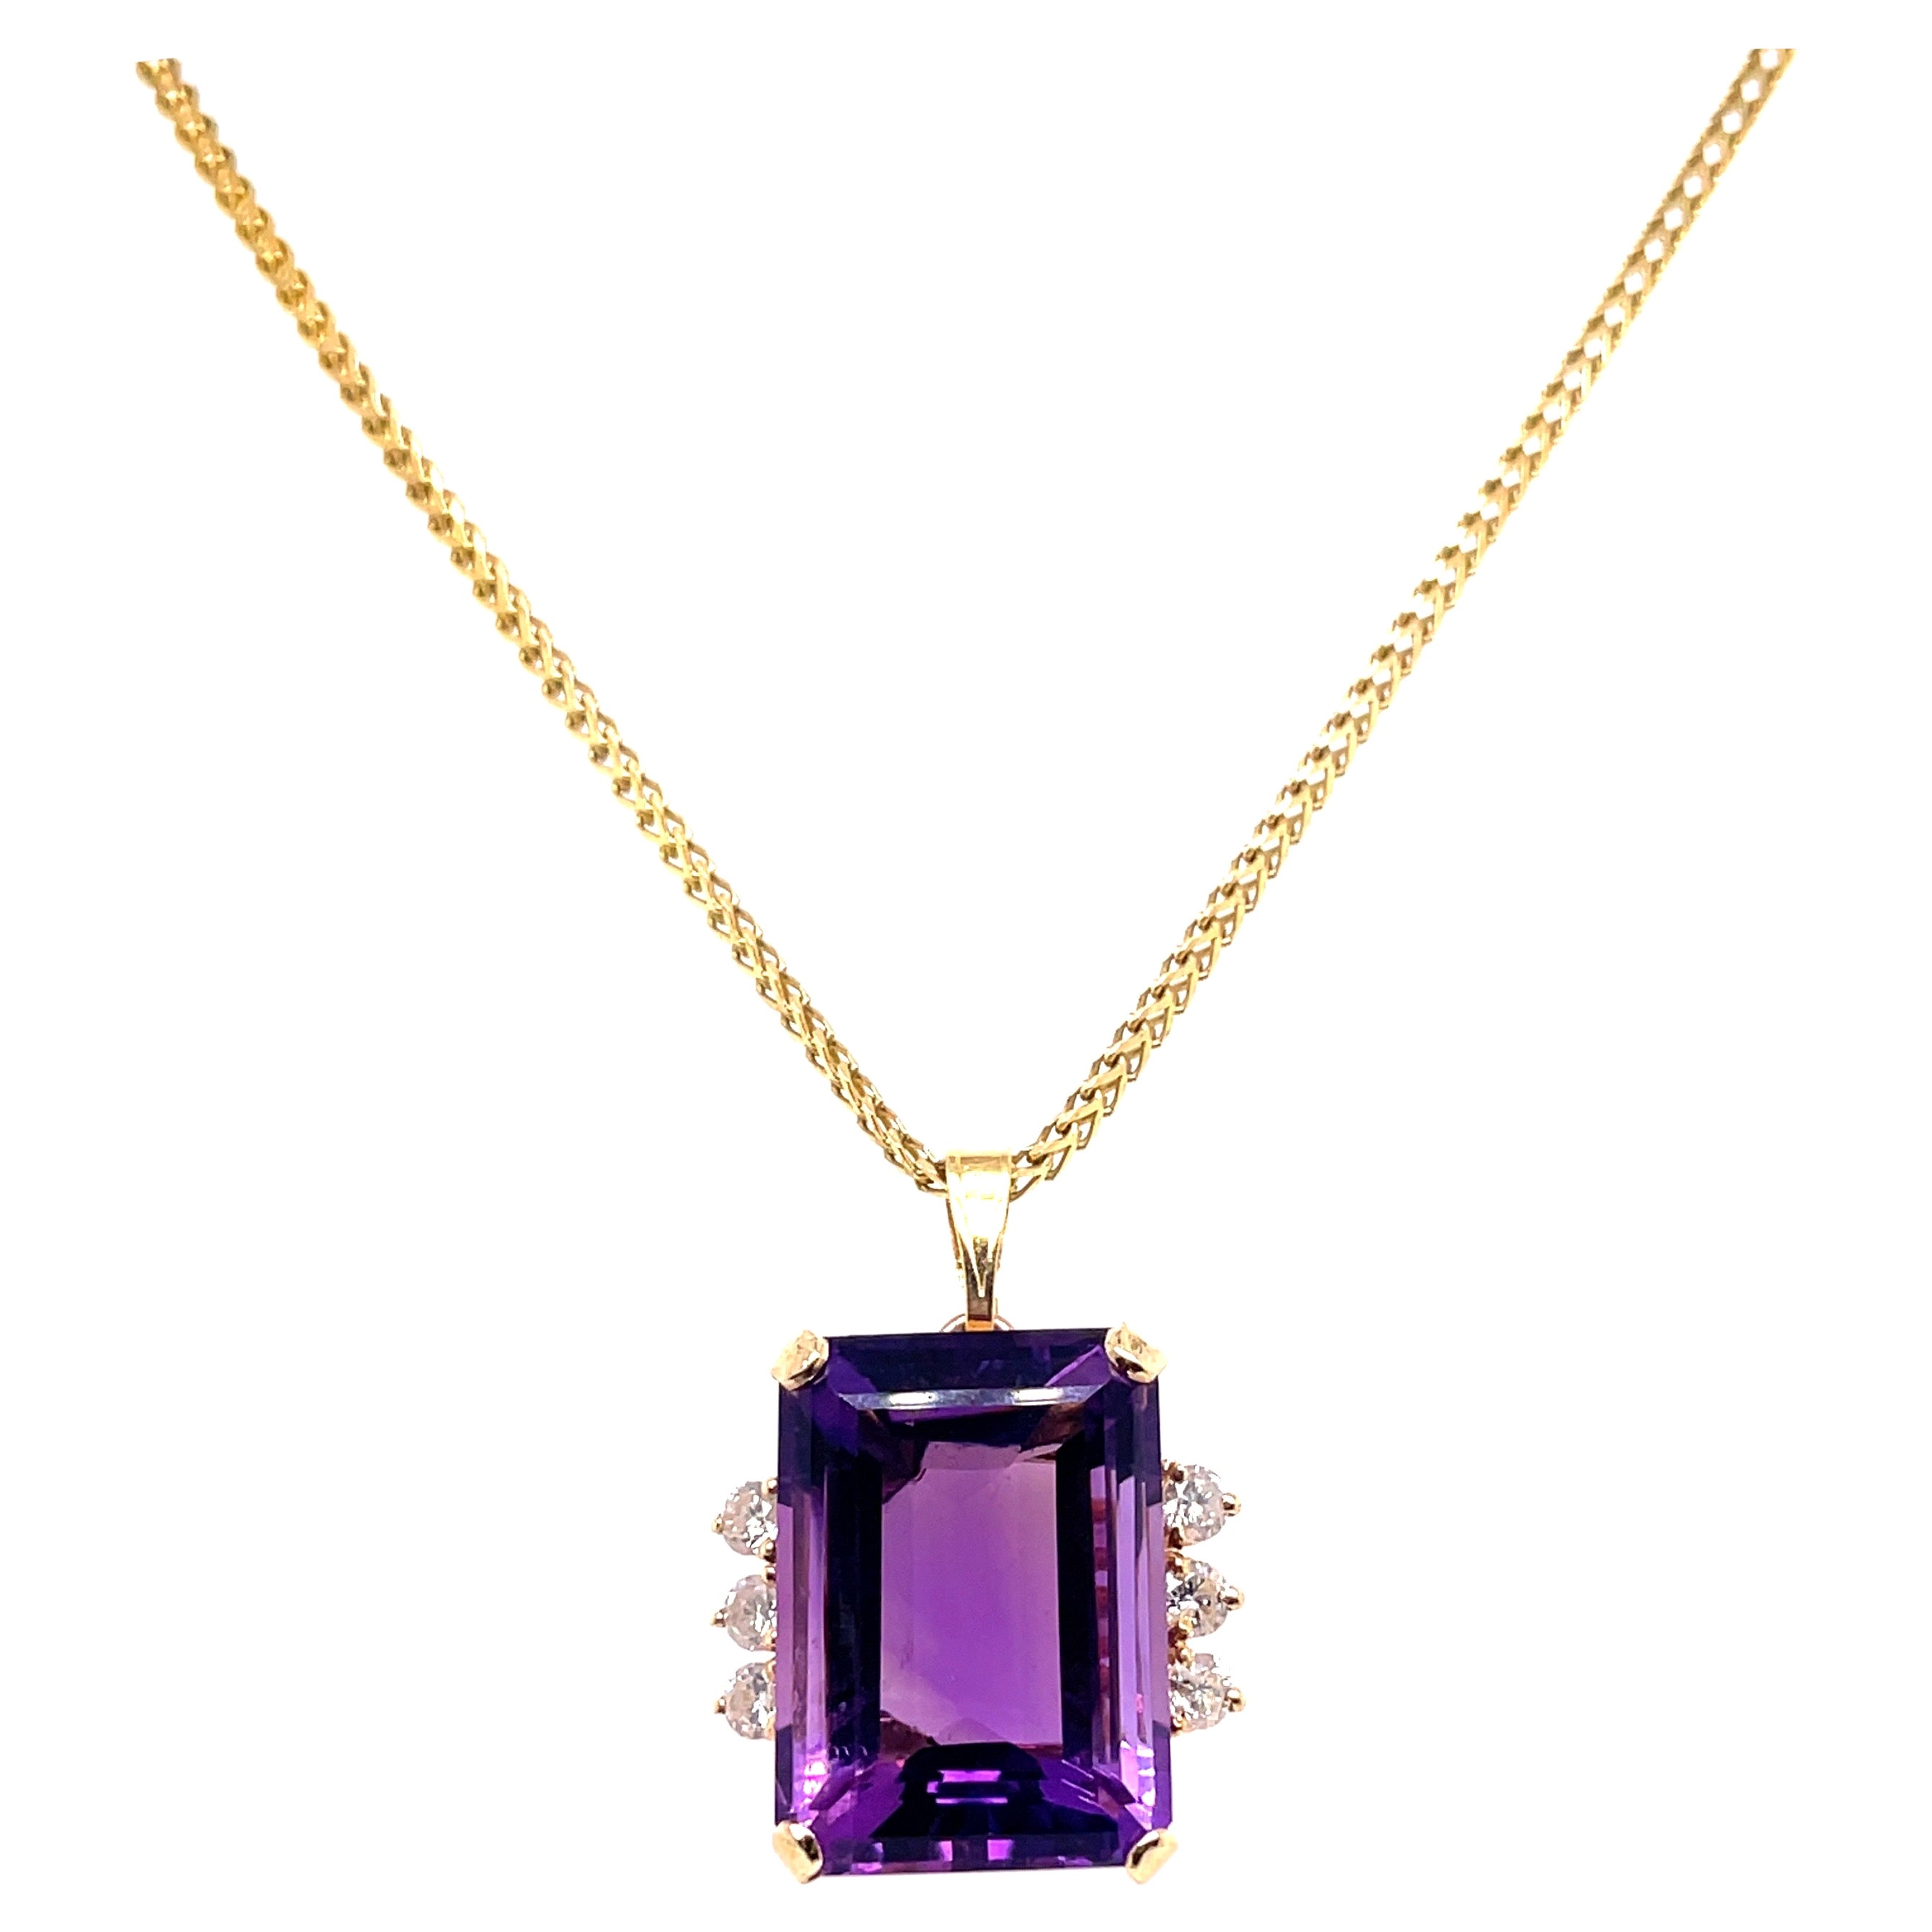 Collier italien vintage en or 14 carats avec diamants et améthyste violette